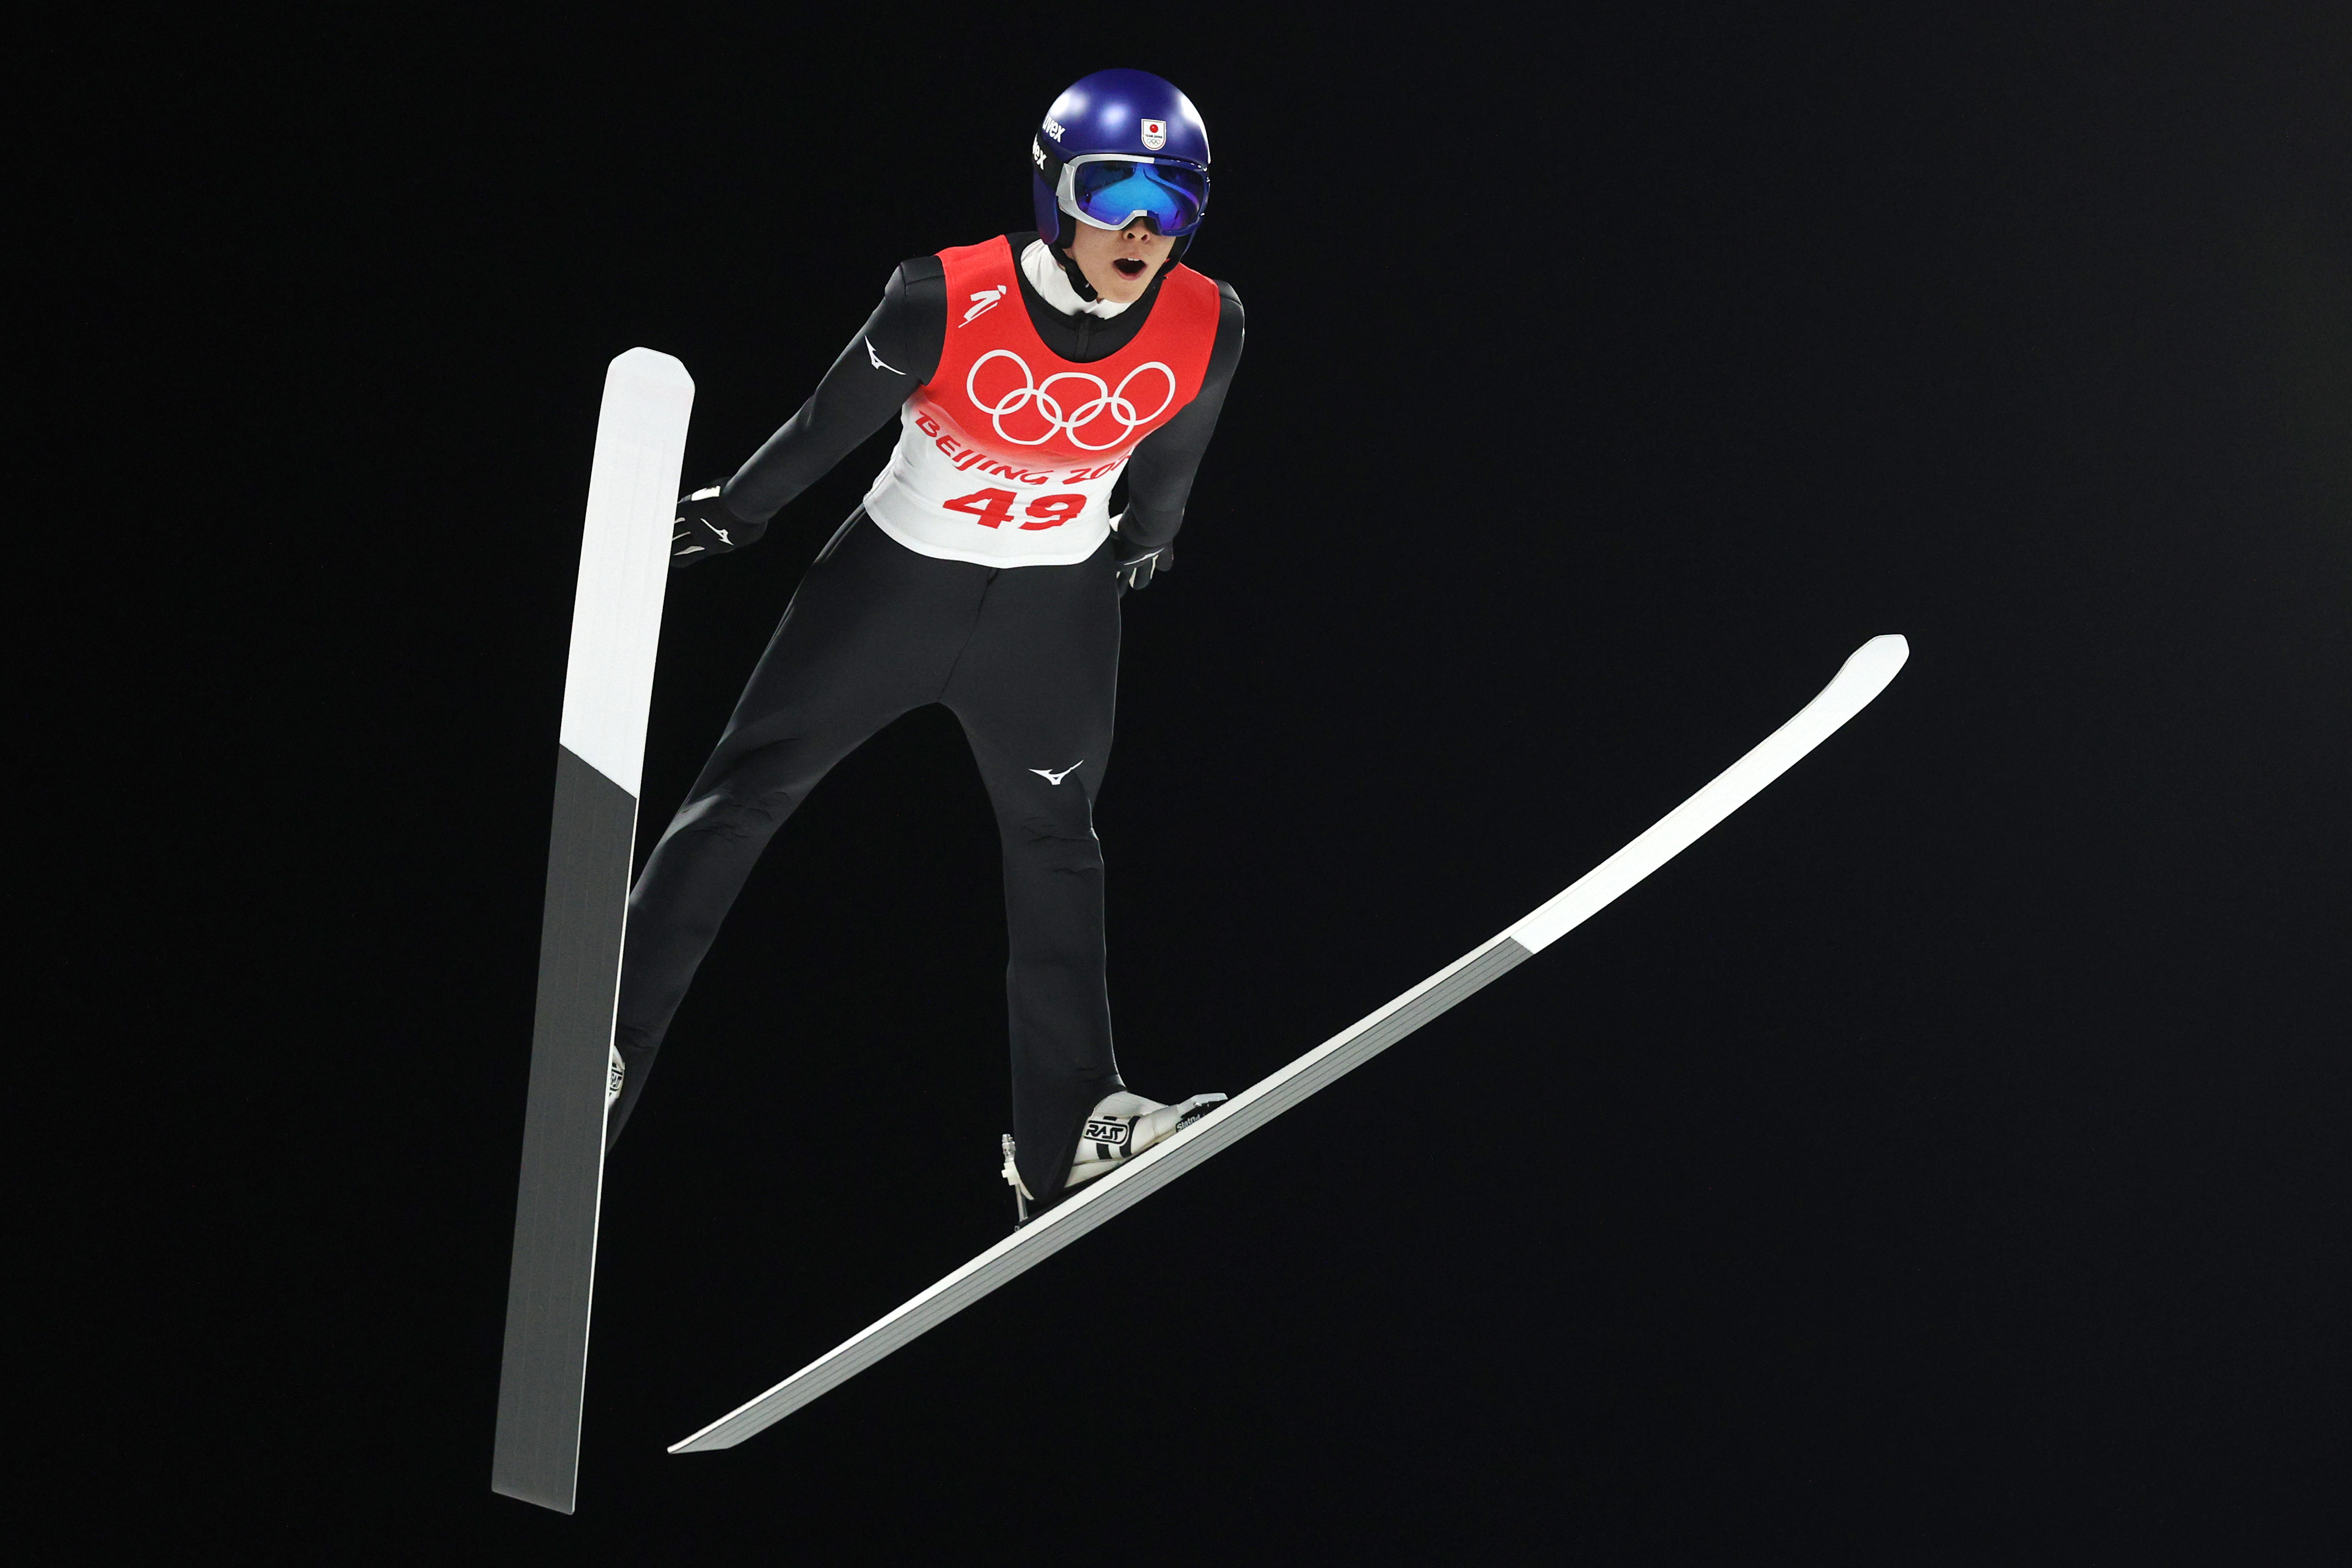 Japans Ryoyu Kobayashi Wins Gold in Mens Individual Normal Hill Ski Jumping Event